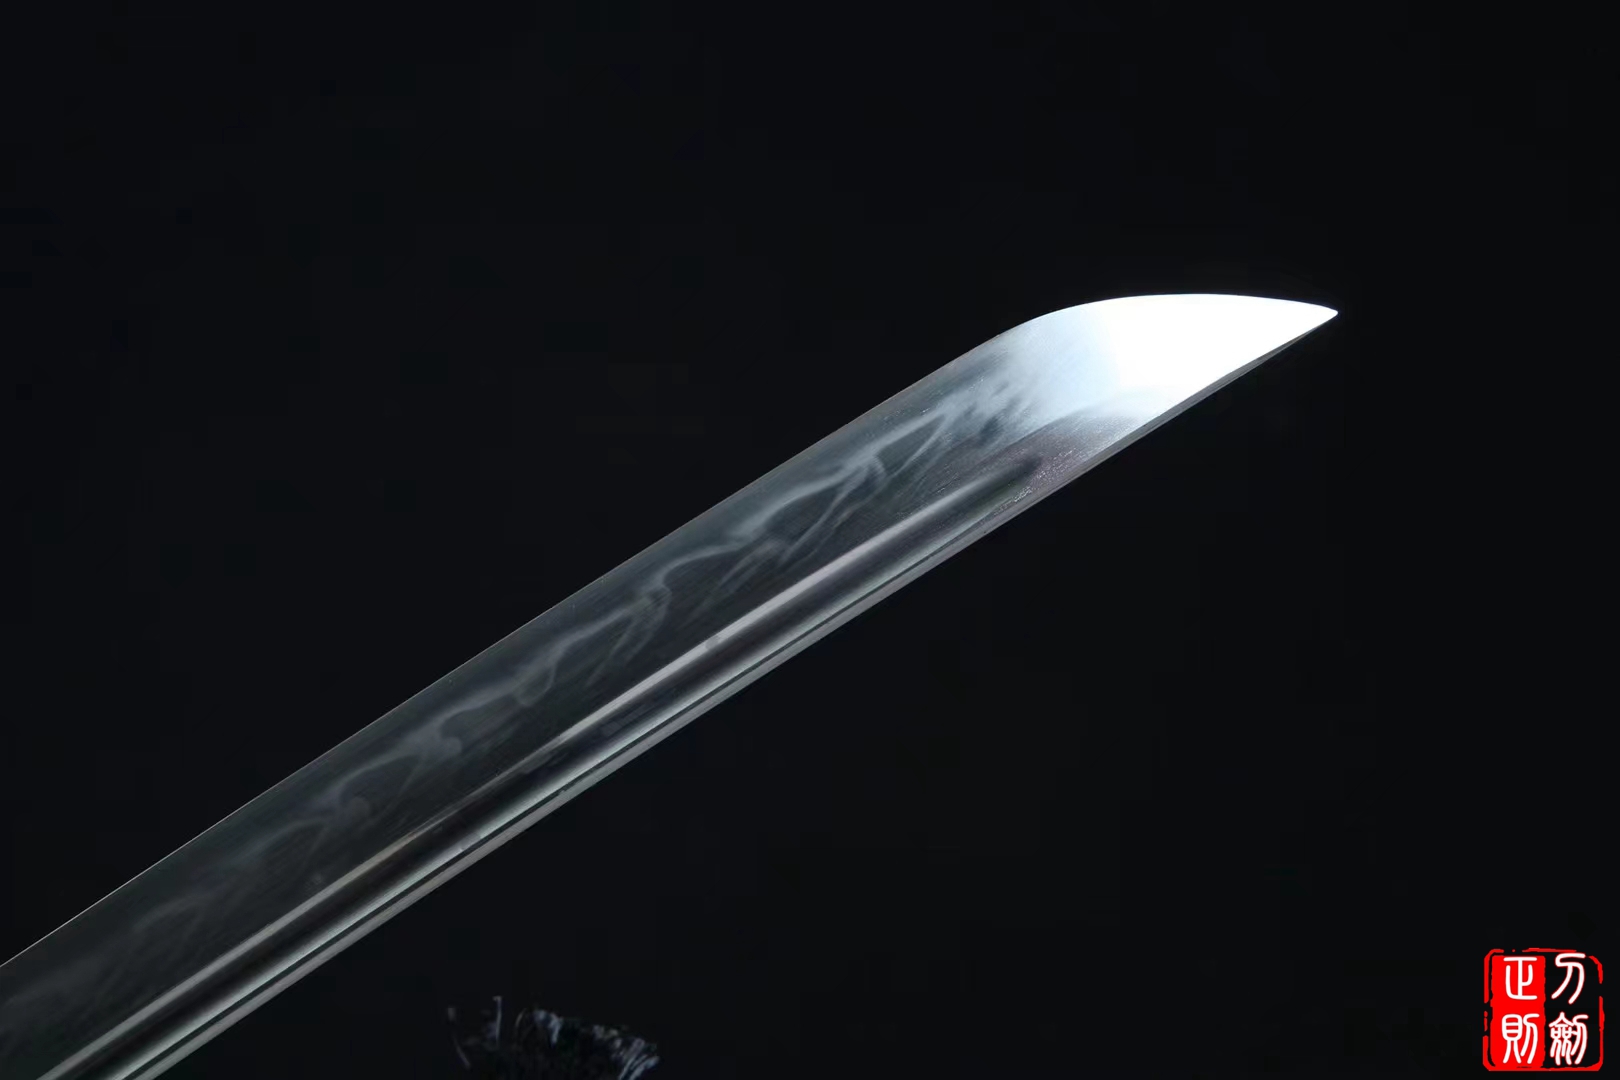  龙魂烧刃武士刀|高碳钢t10|武士刀正则,日本武士刀,中国日本刀,东洋刀,武士刀图片